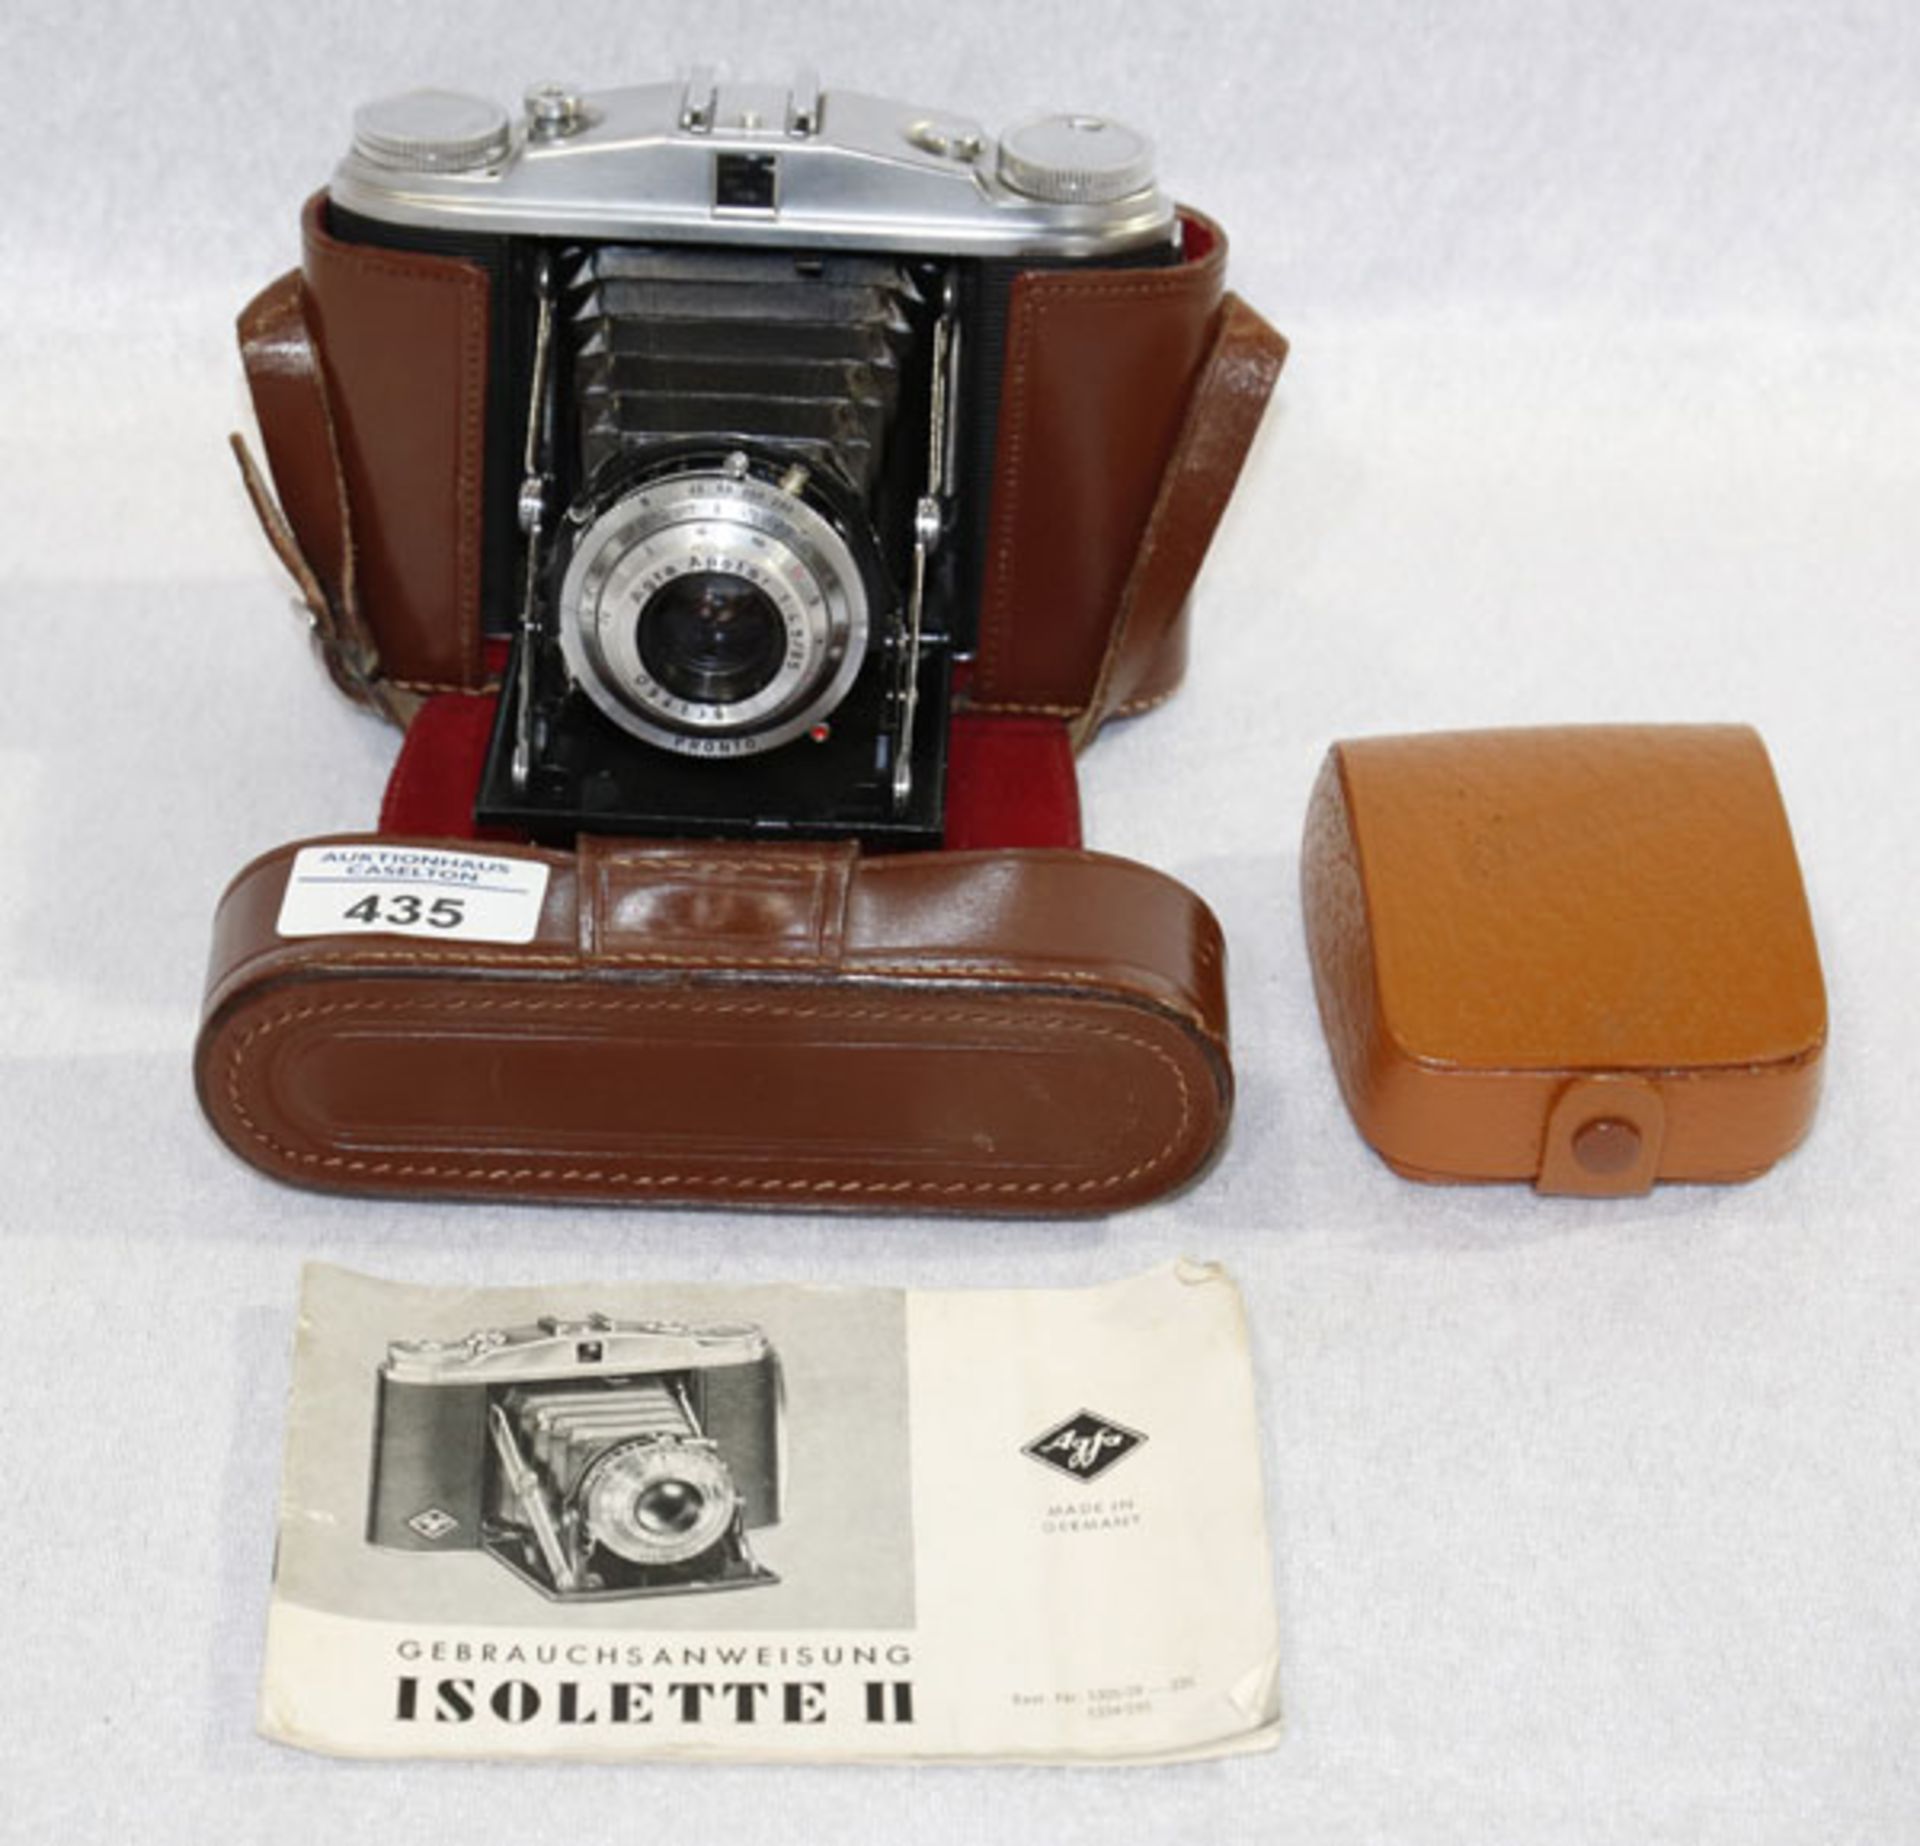 Agfa Fotokamera Isolette II, mit Tasche und Gebrauchssanweisung, sowie Zubehör, Gebrauchsspuren